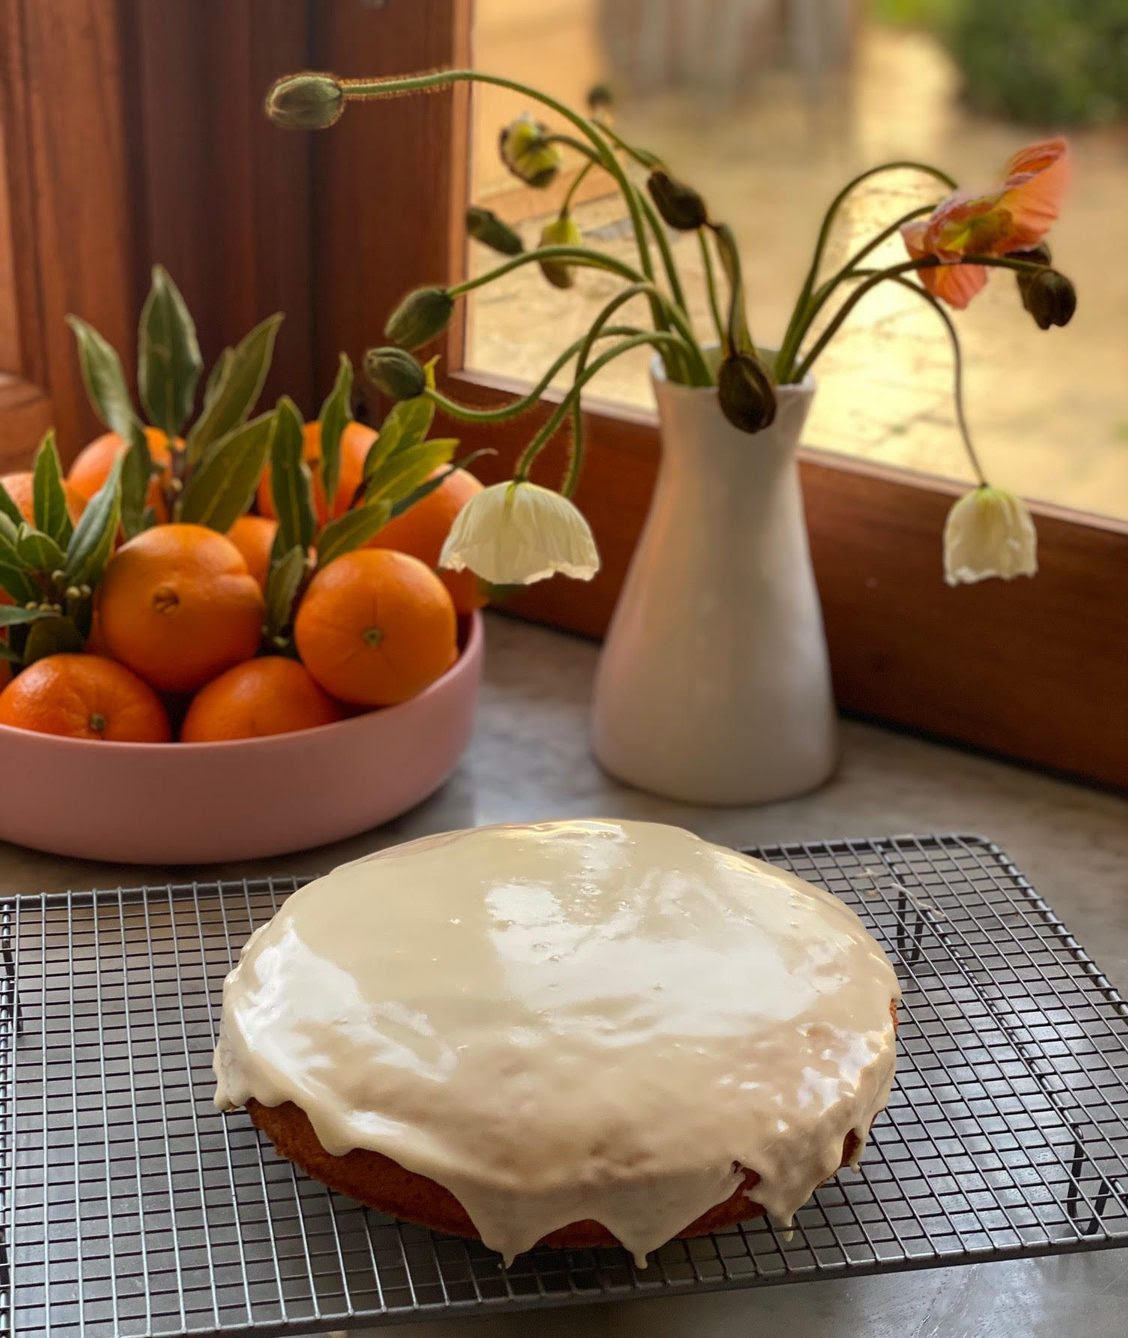 Sweet Orange Cake with Orange Glaze